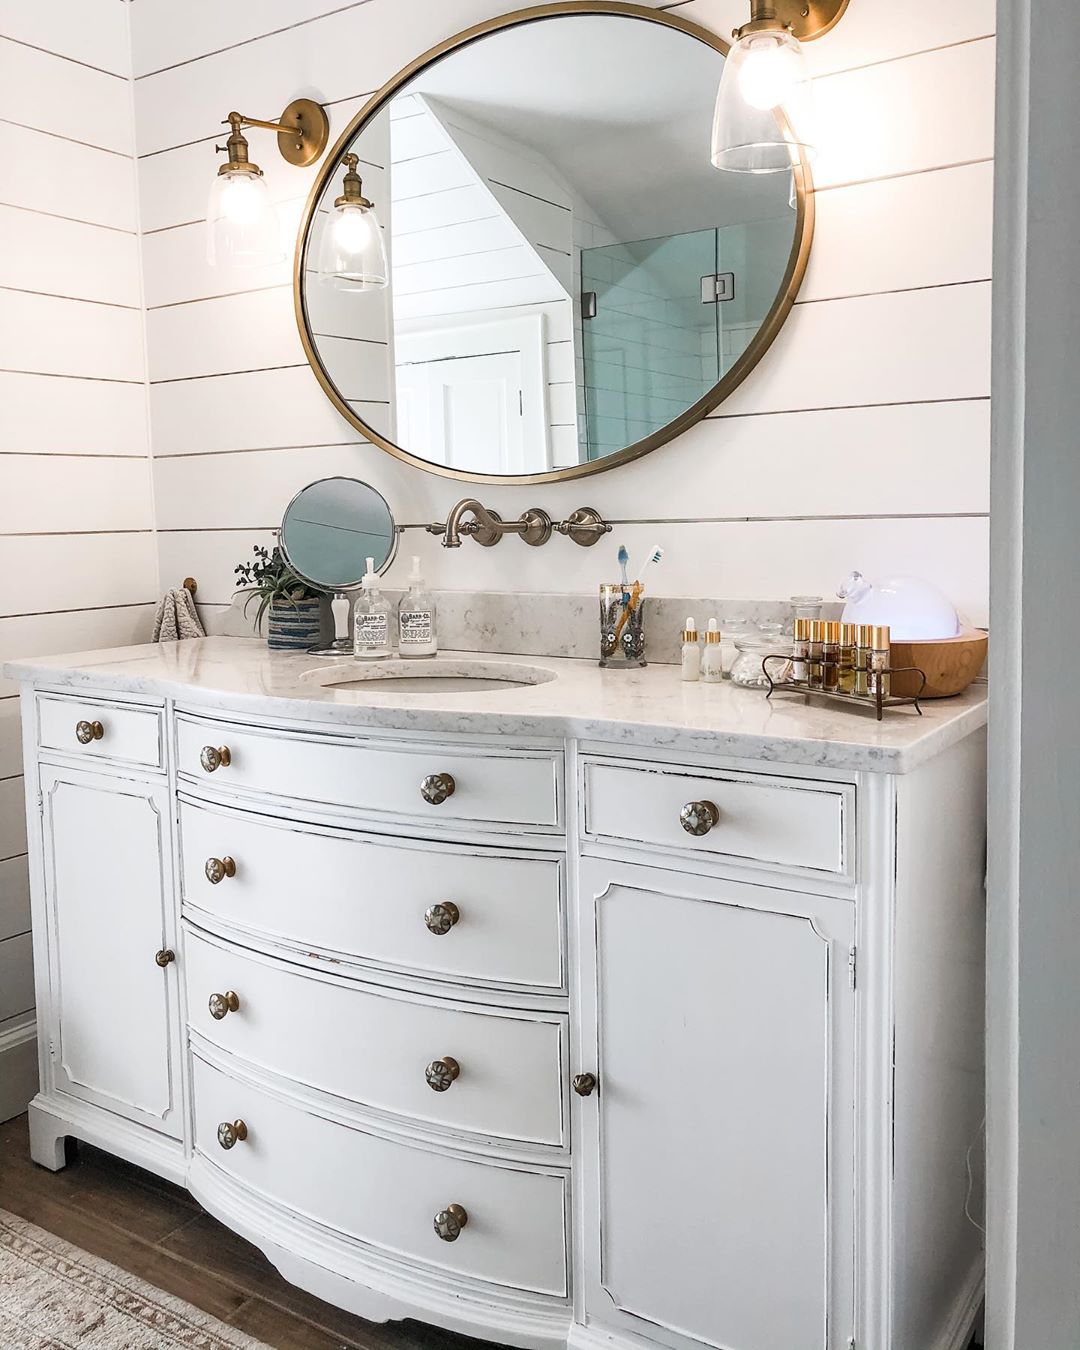 repurposed dresser used as a bathroom vanity photo by Instagram user @hkwdesign